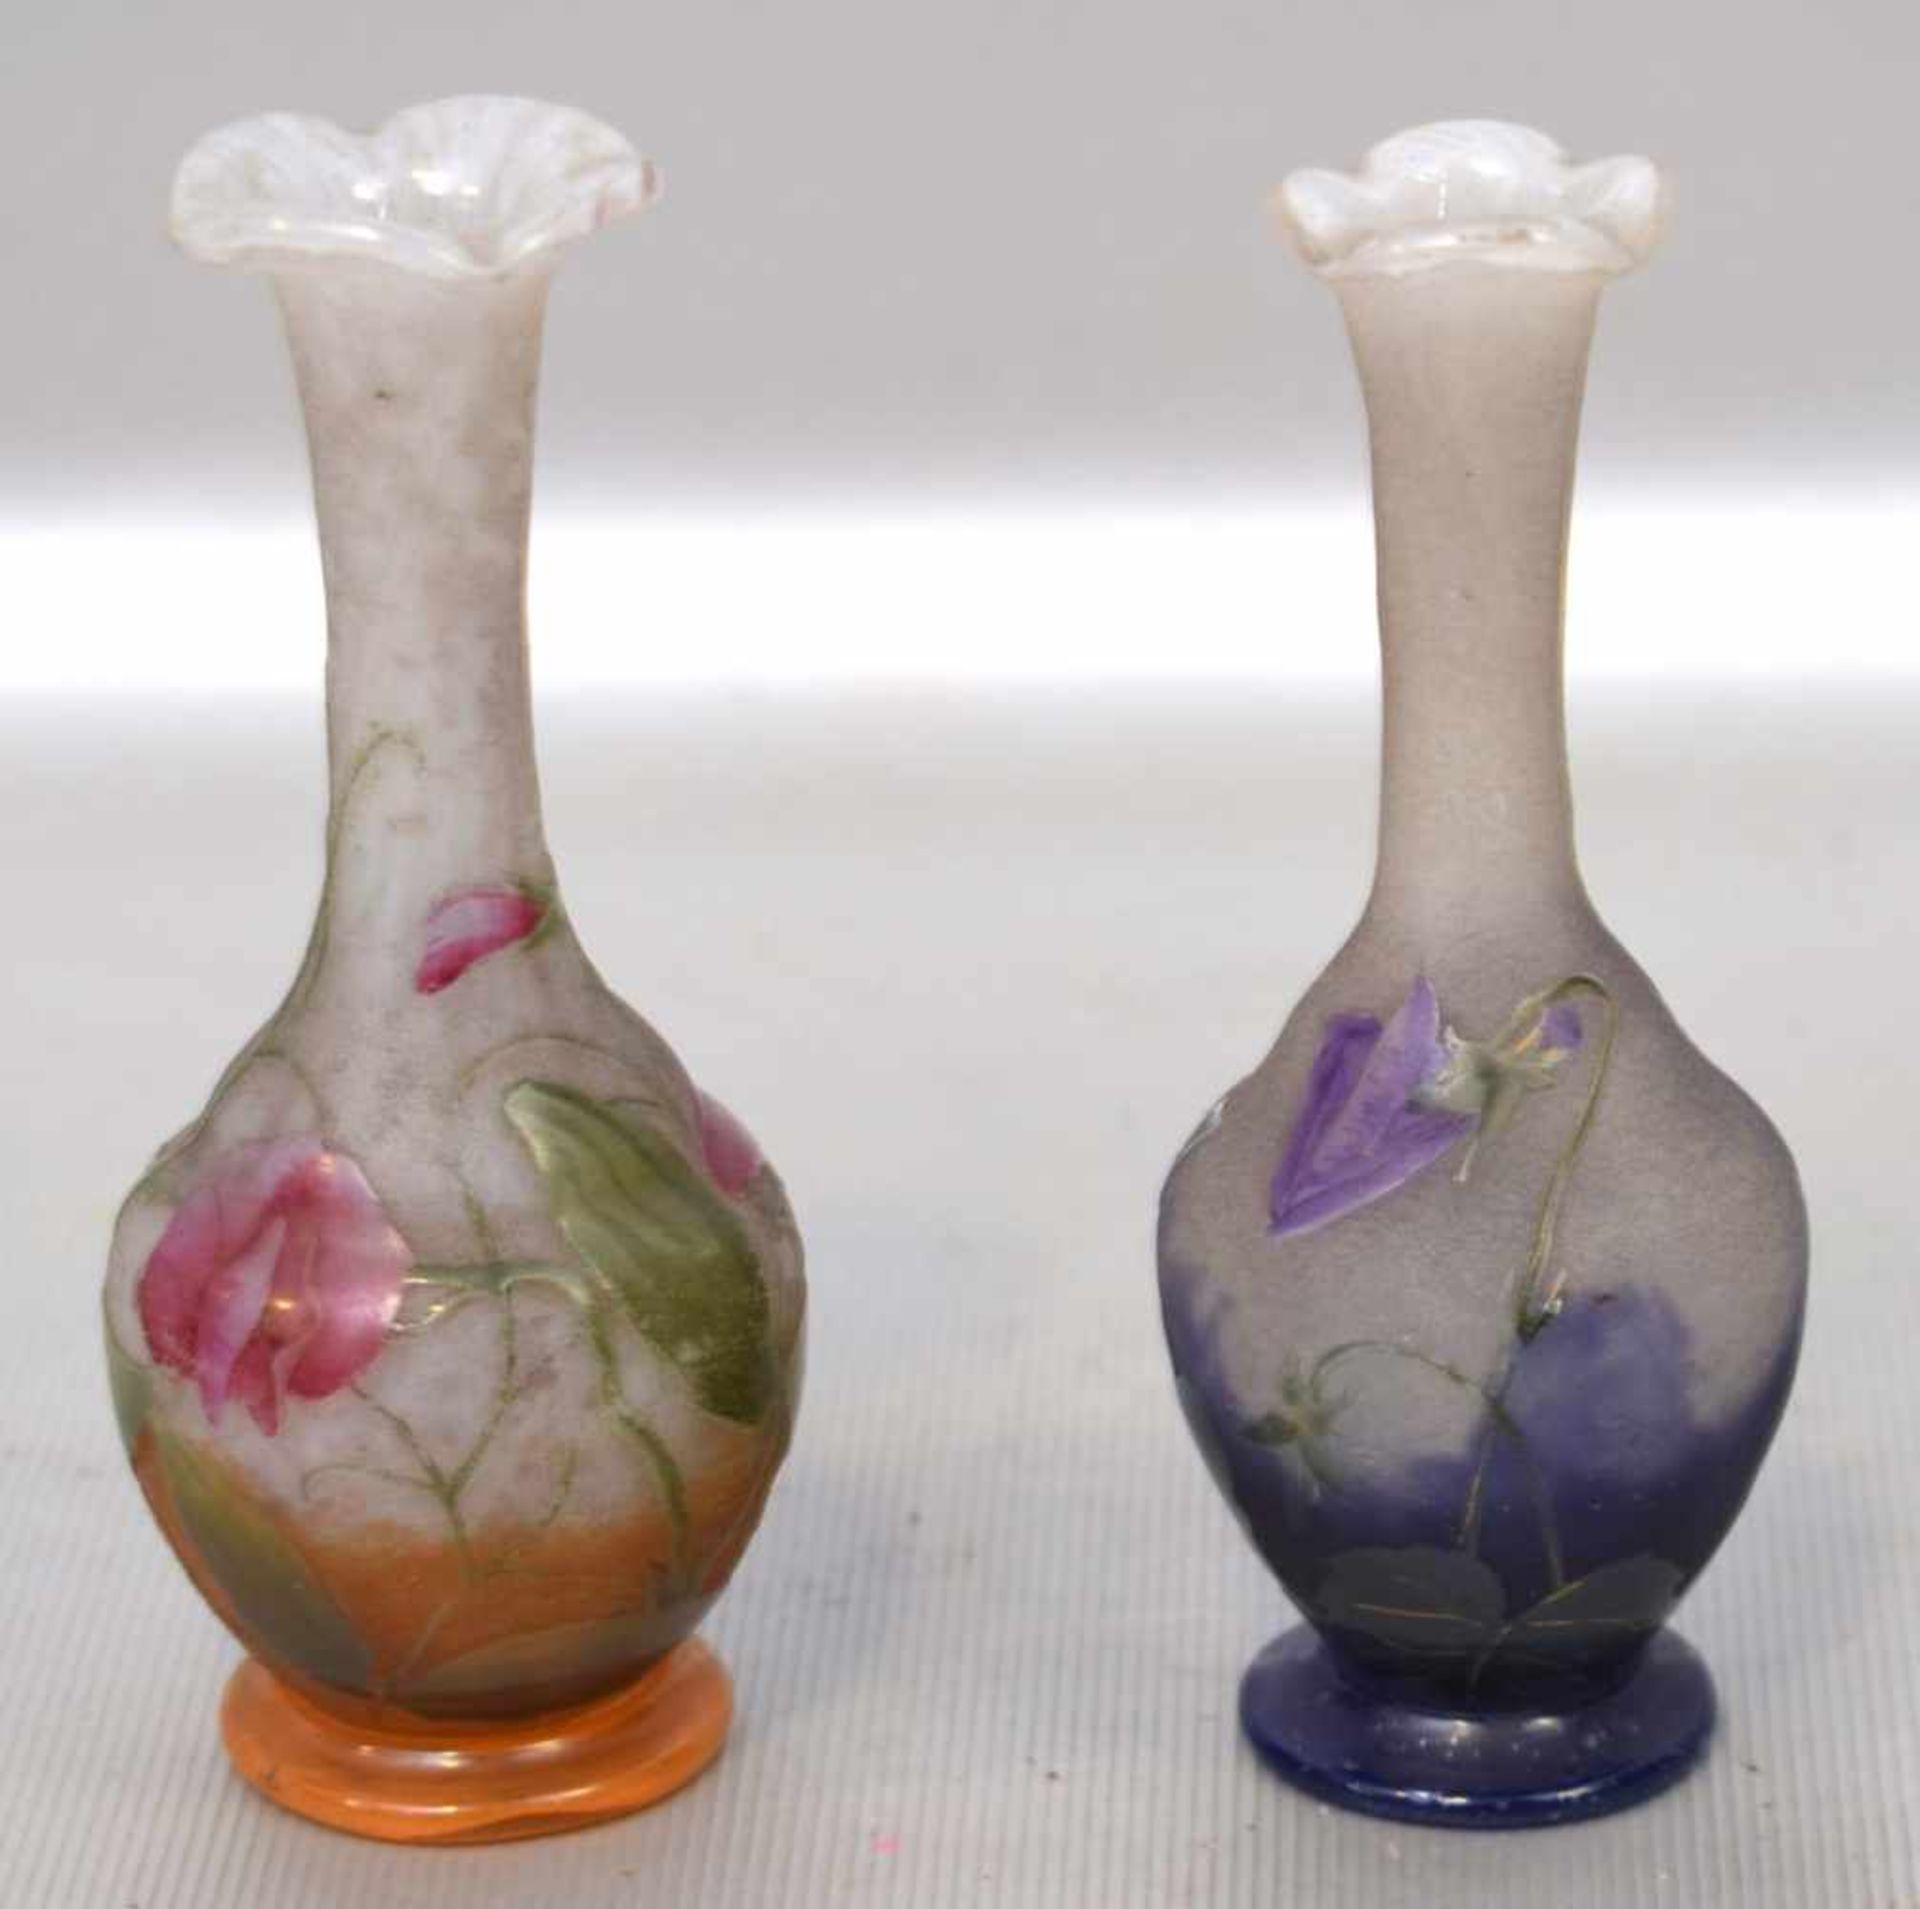 Zwei ZiervasenMilchglas, runder Fuß, Wandung leicht gebaucht, mit lila bzw. rosa aufgelegten Blüten,